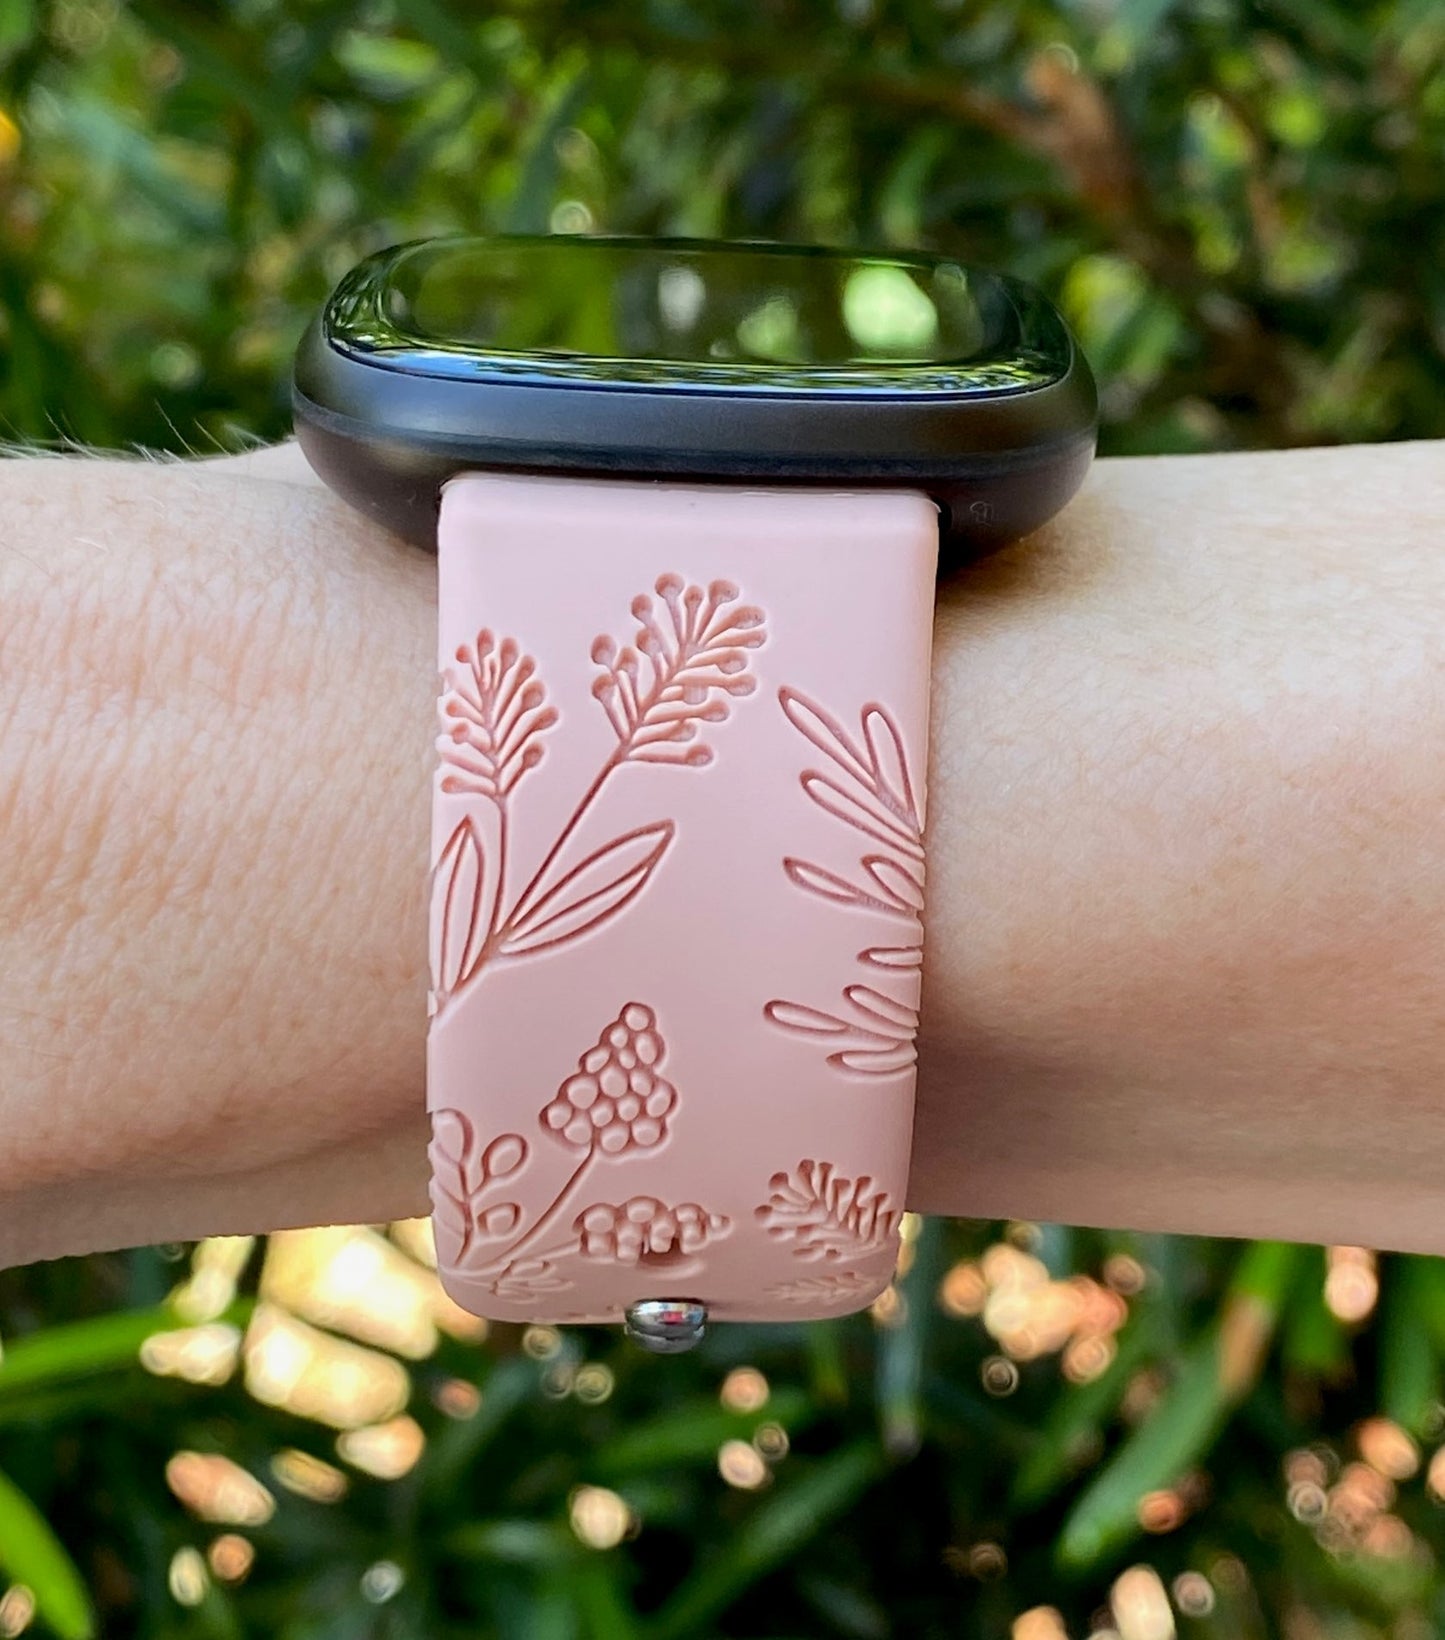 Wildflower Fitbit Versa 3/Sense Watch Band